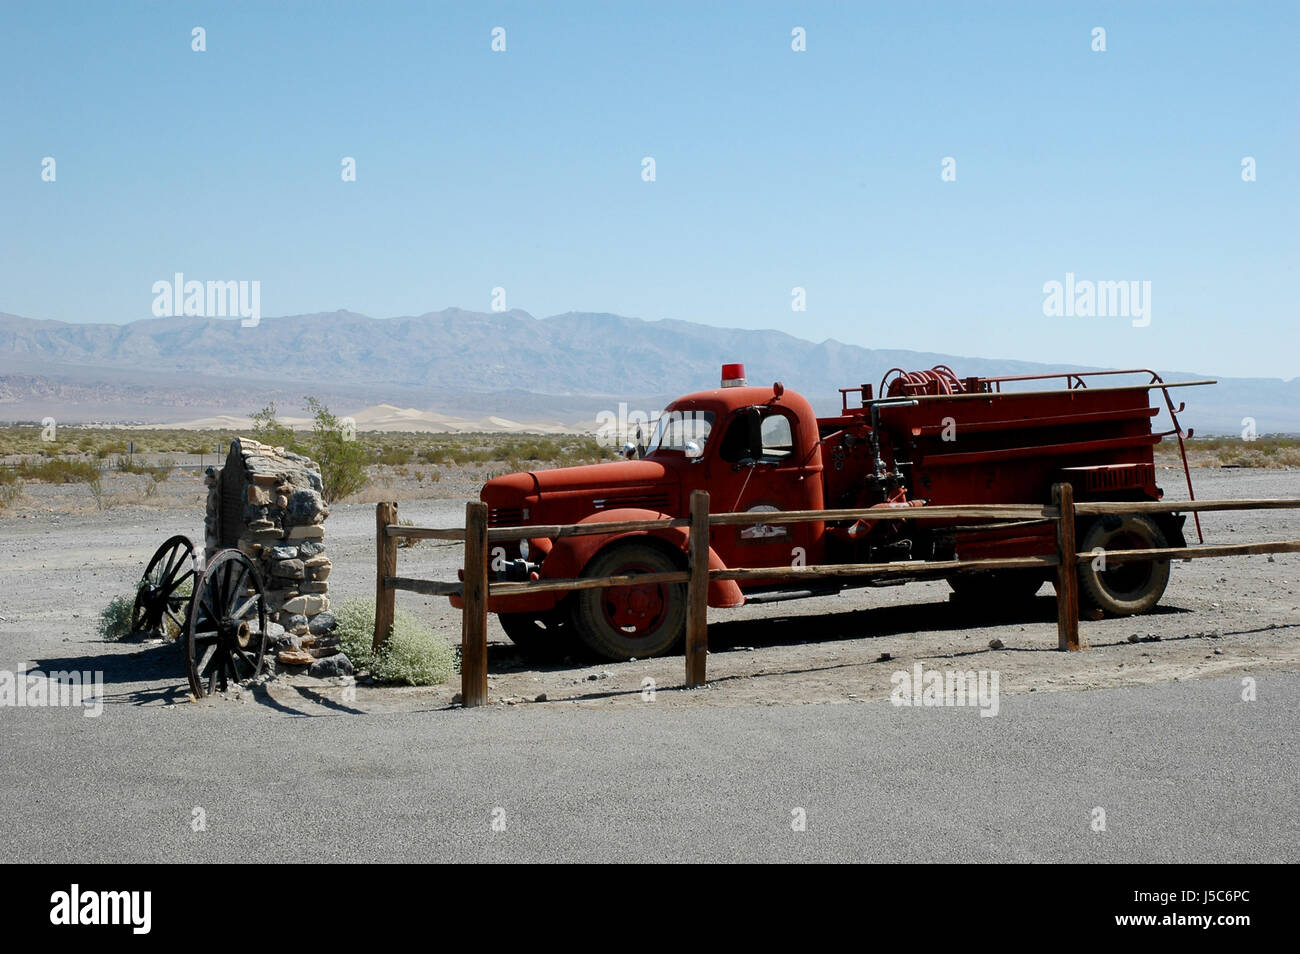 Stati Uniti Death Valley feuerwehrwagen wste salzwste amerika mojave-wste sierra nevada Foto Stock